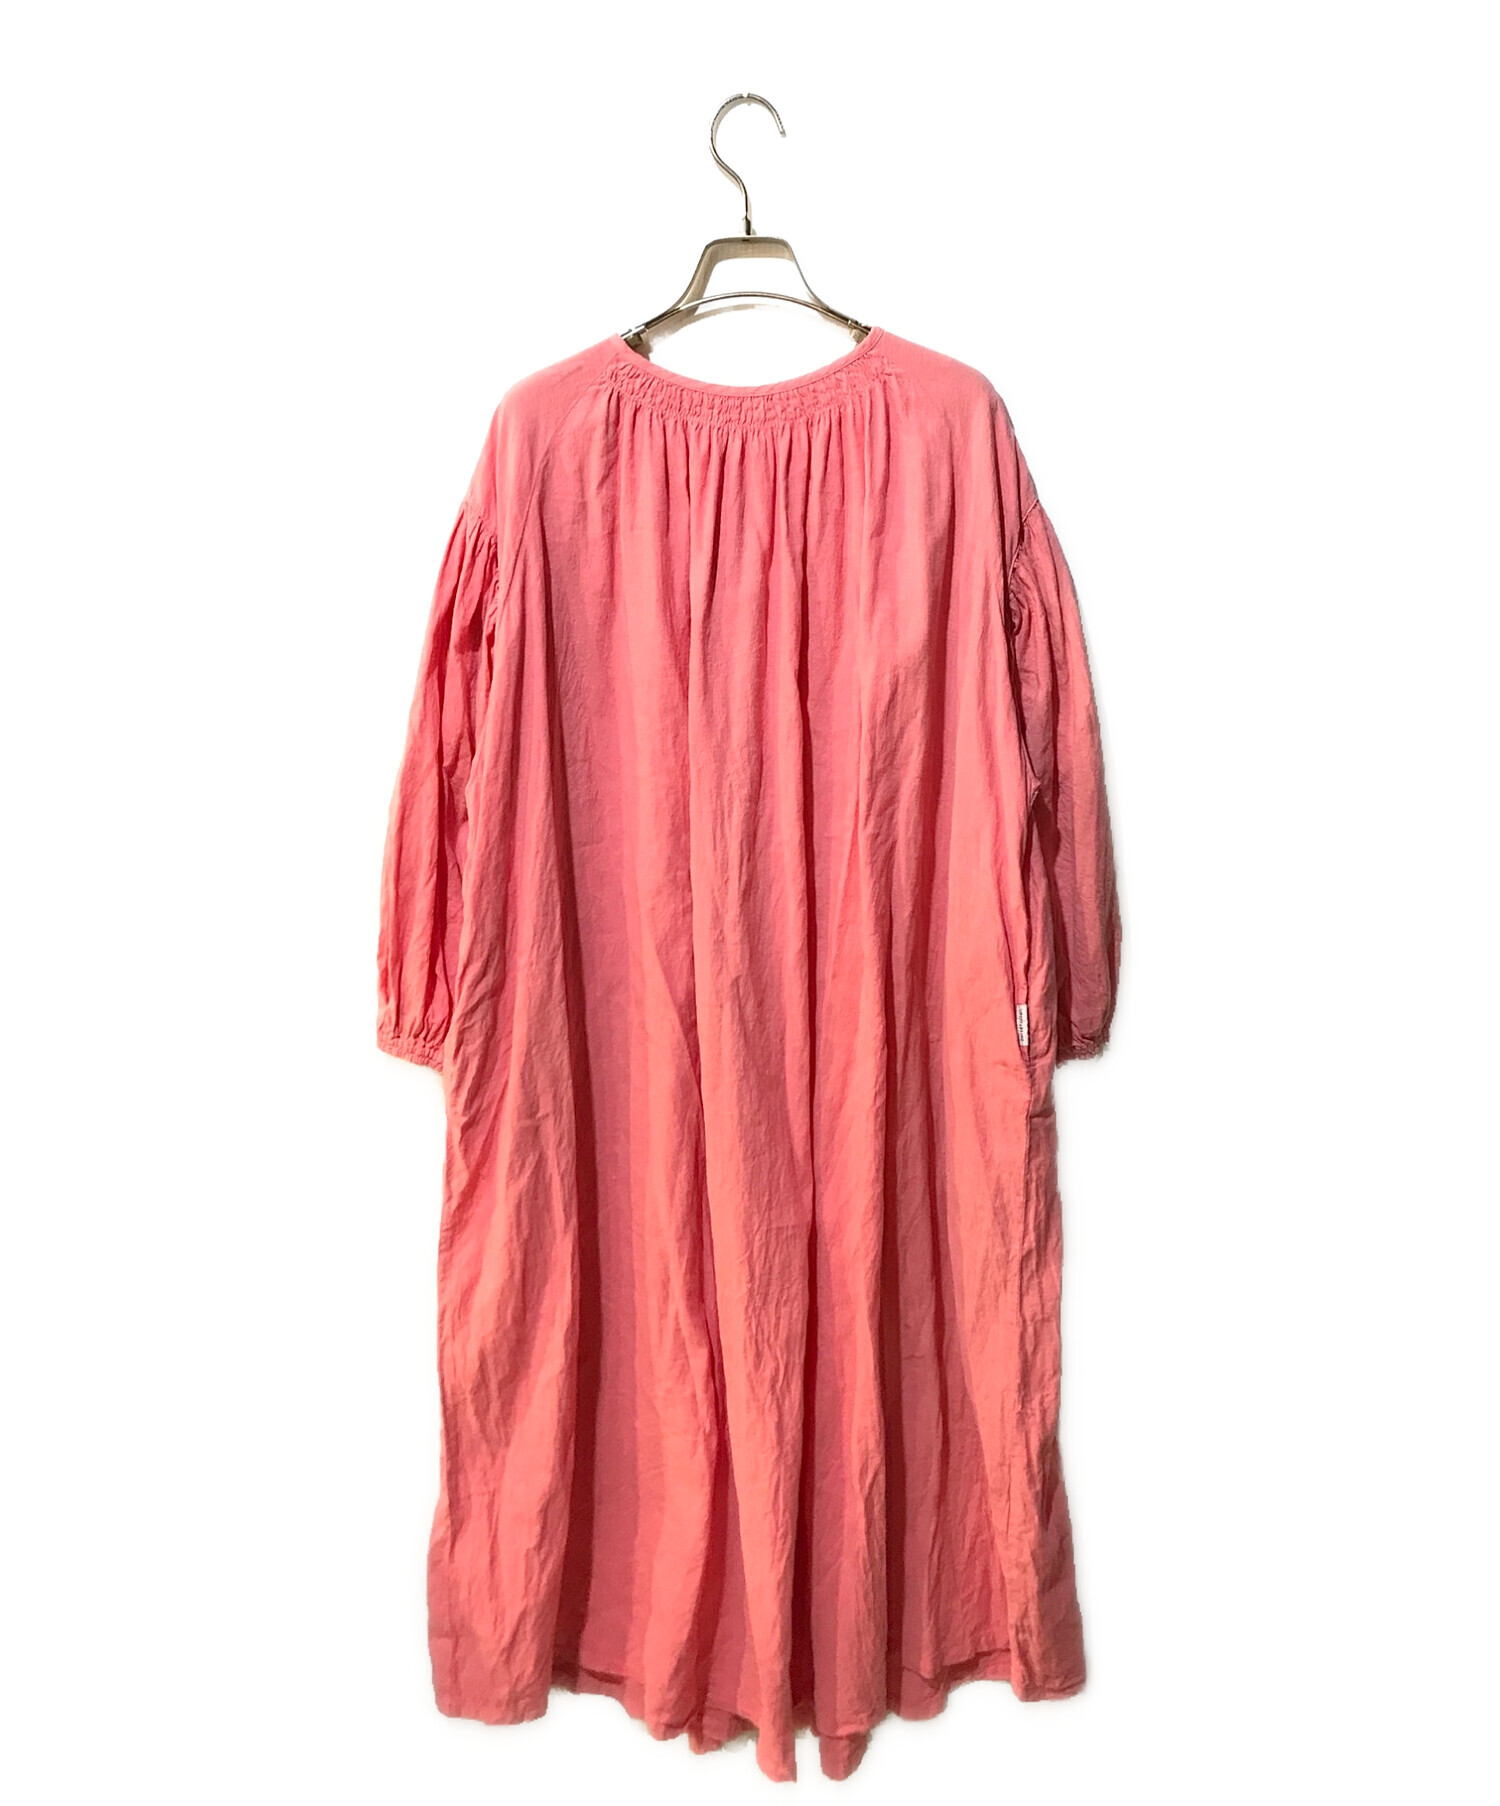 nest Robe (ネストローブ) 近江晒しメニーギャザードレス 01241-1475 ピンク サイズ:Free